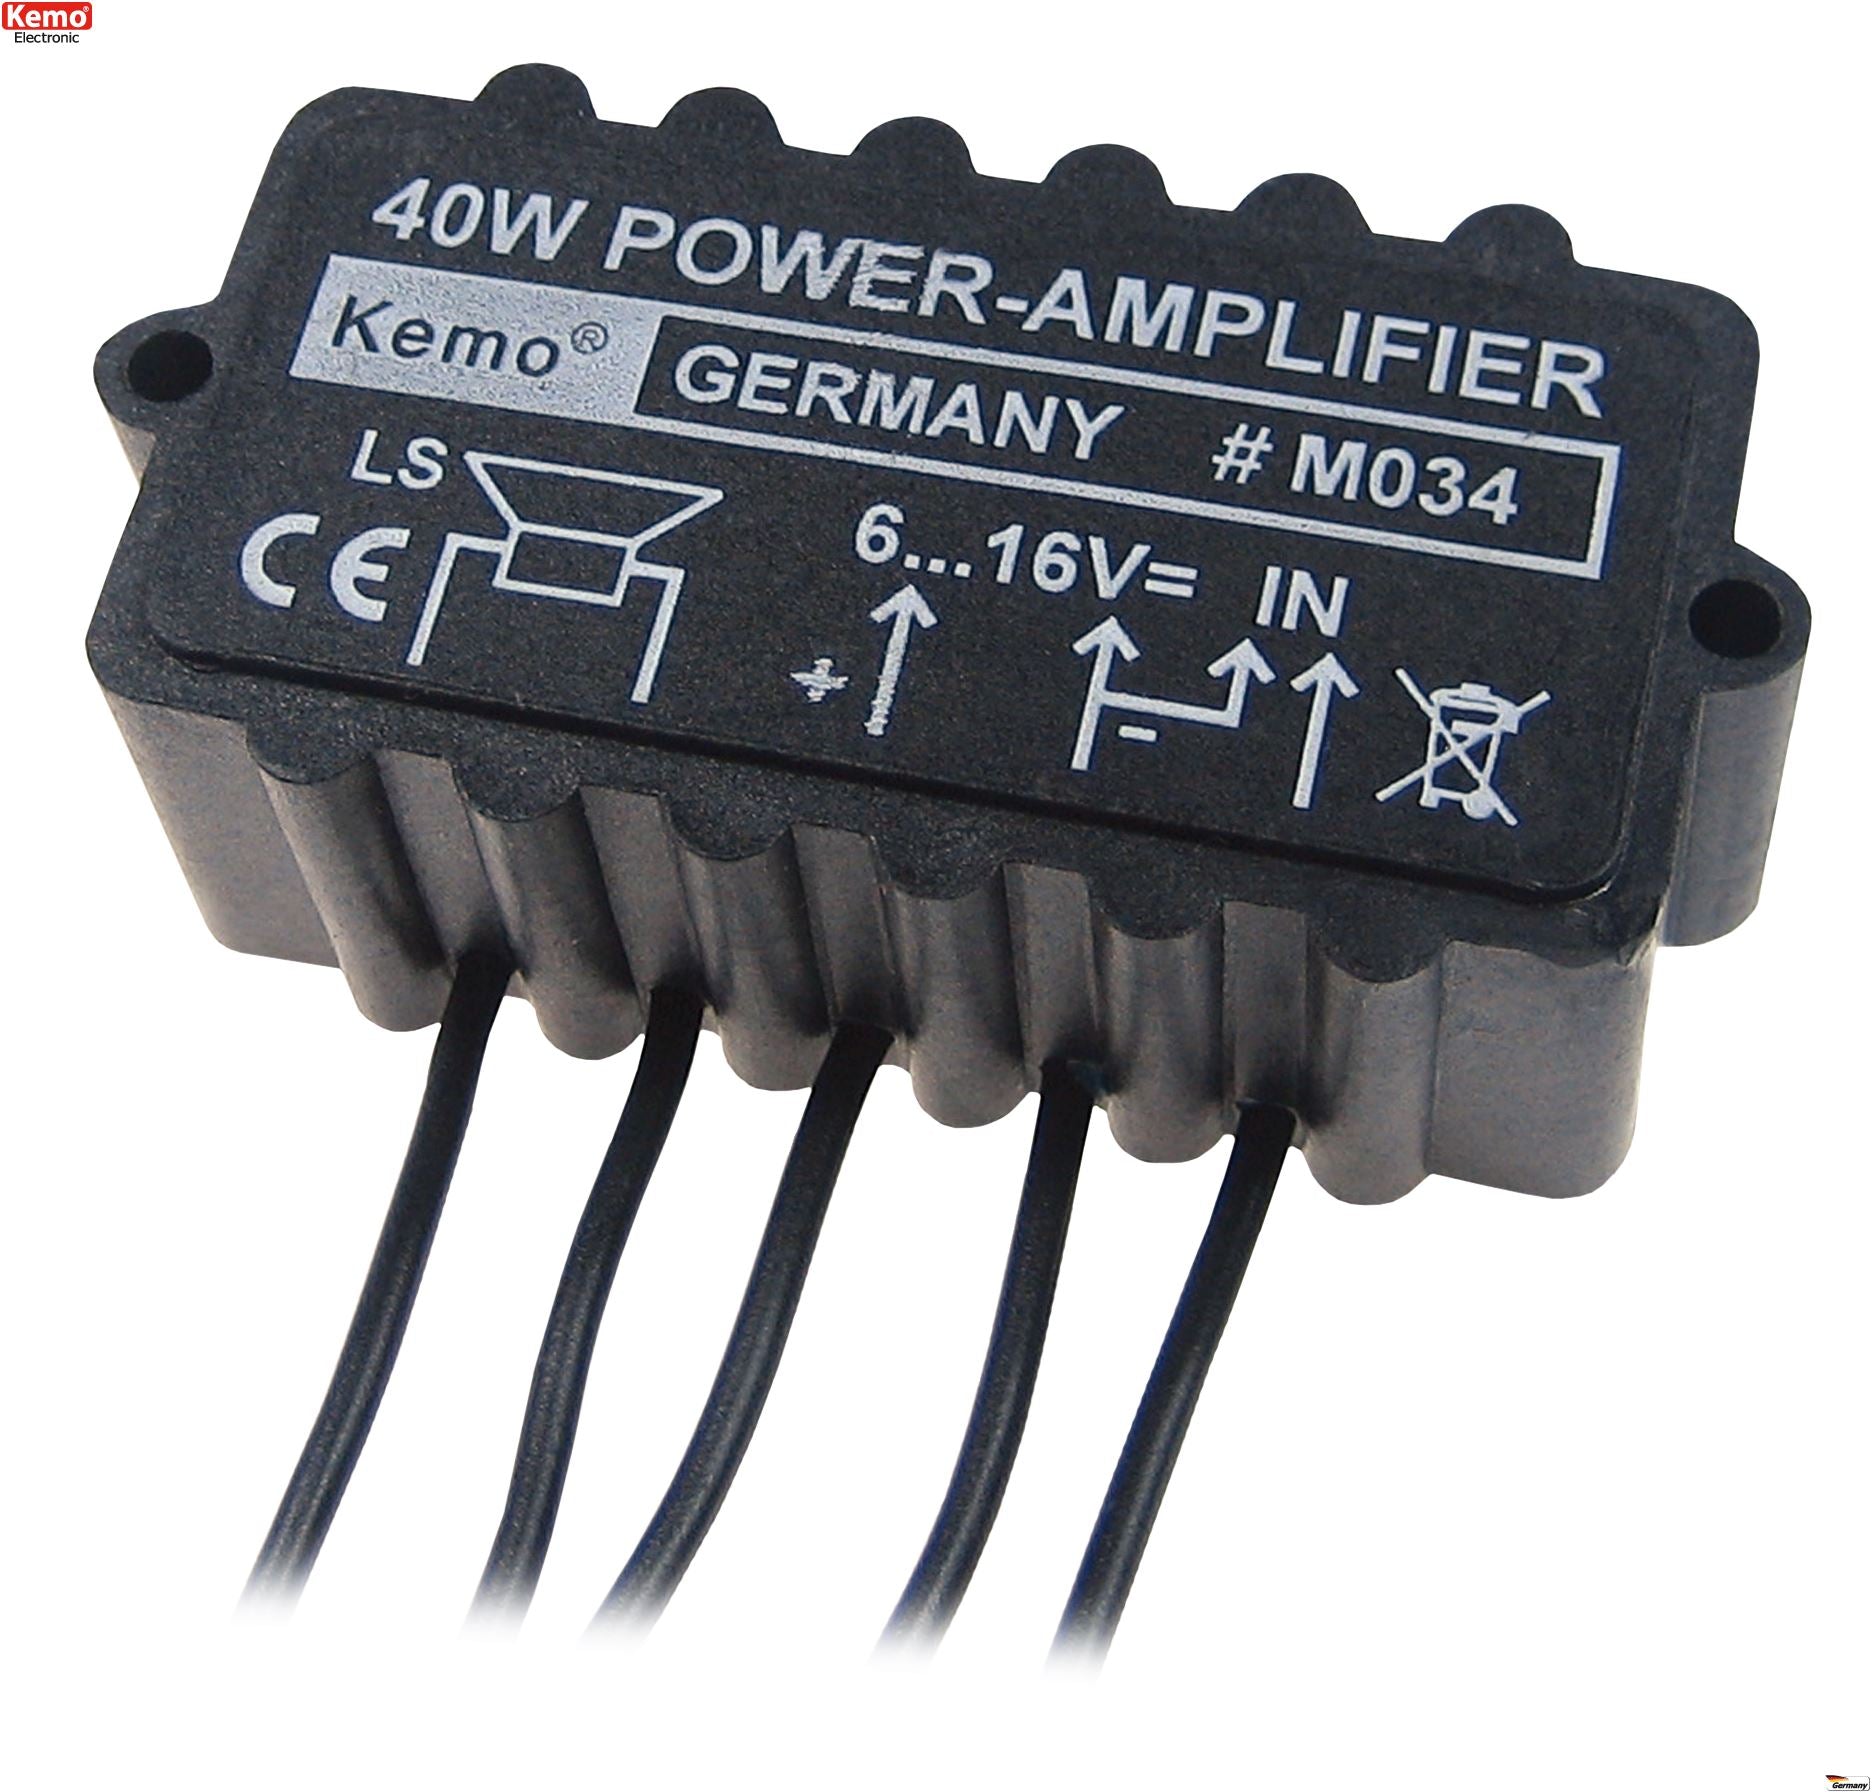 Kemo M034 40W Universal Power Amplifier Module